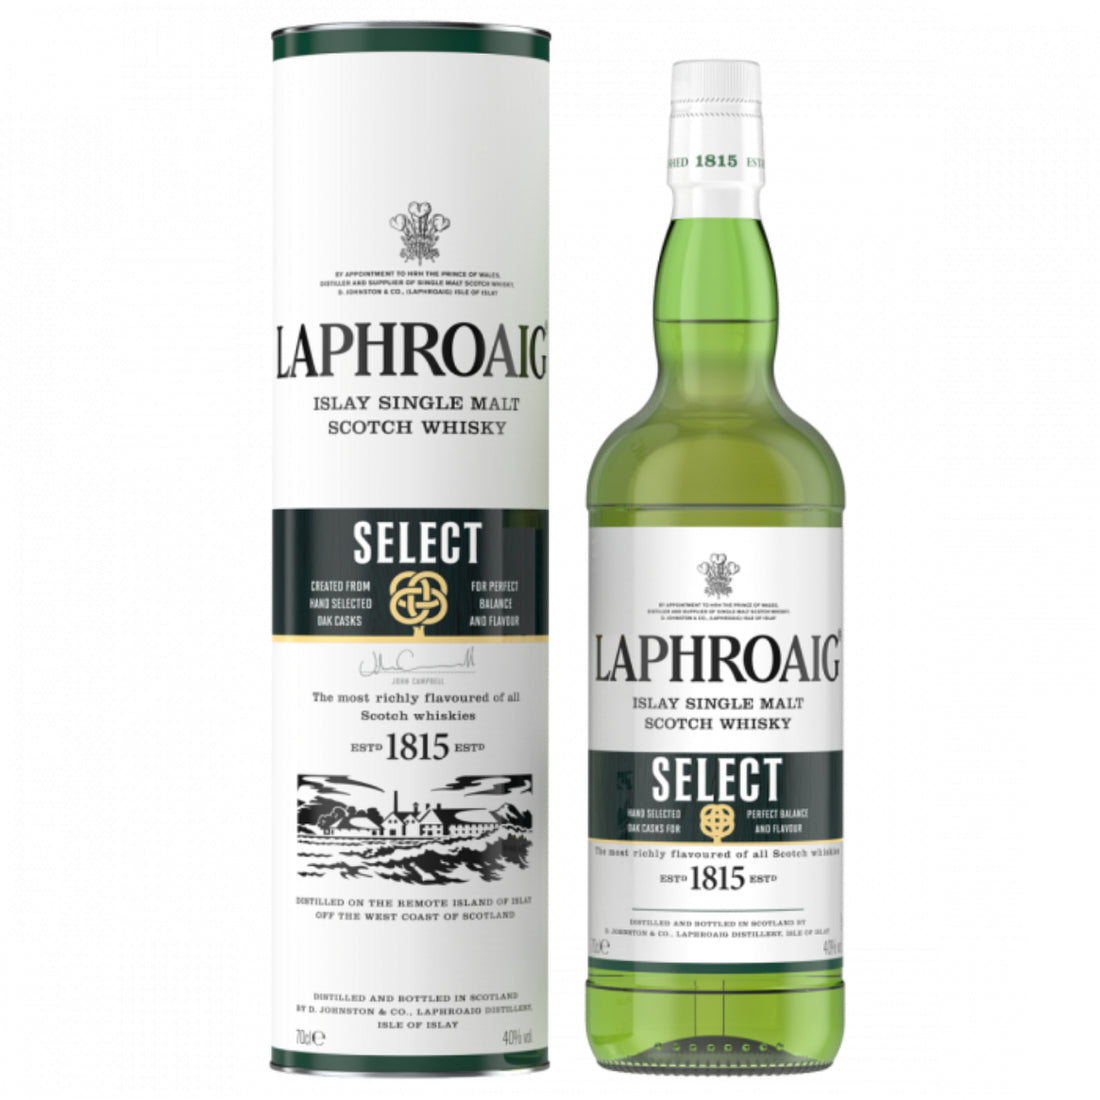 Laphroaig Select Single Malt Scotch Whisky – caskexplorers